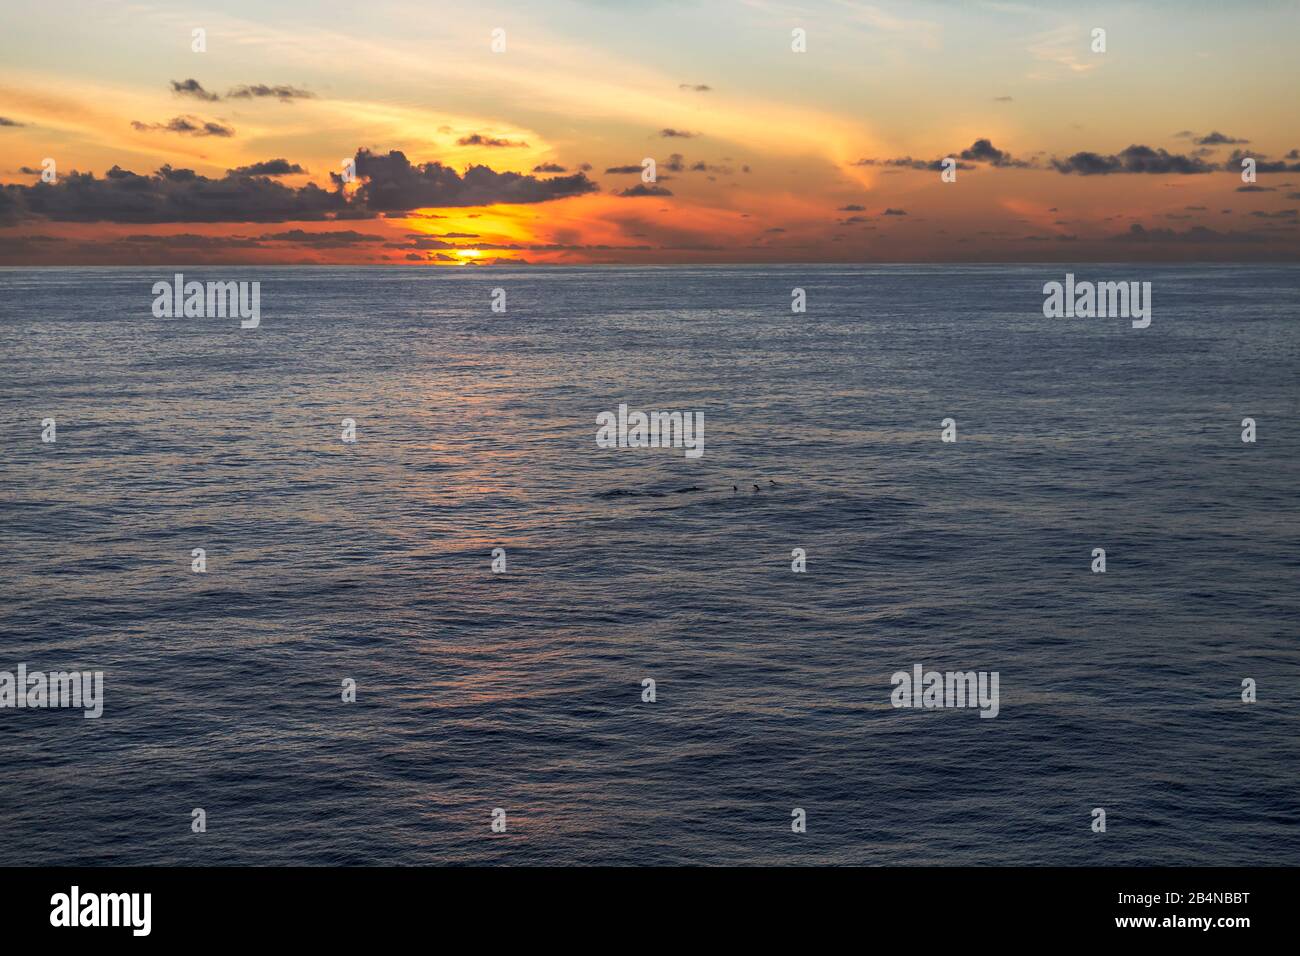 Sonnenuntergang, Delfine am Horizont, Aussicht vom Kreuzfahrtschiff auf das Meer, Mauritius, Indischer Ozean Stock Photo